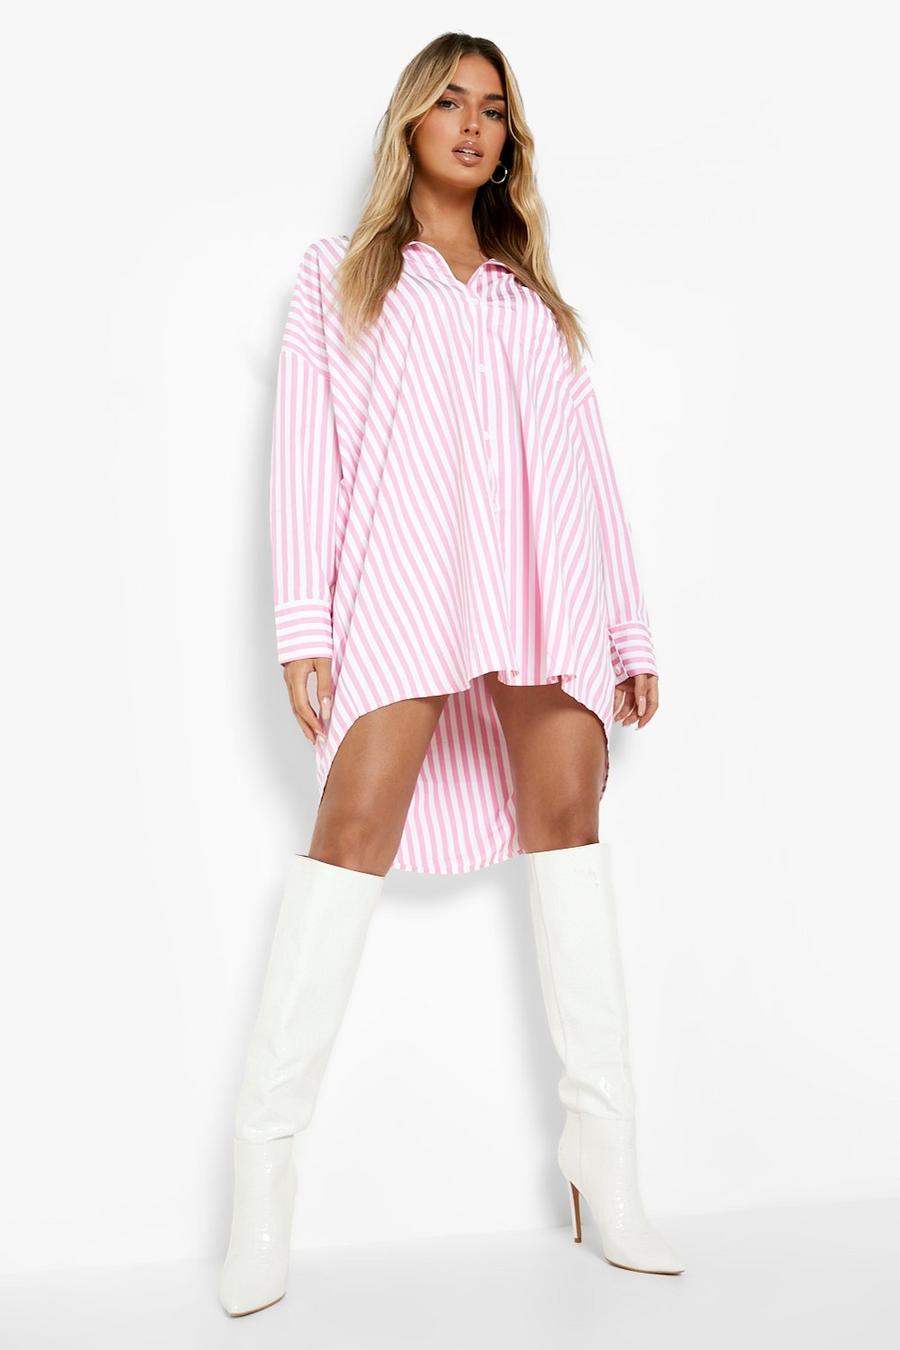 Hot pink Striped Shirt Dress